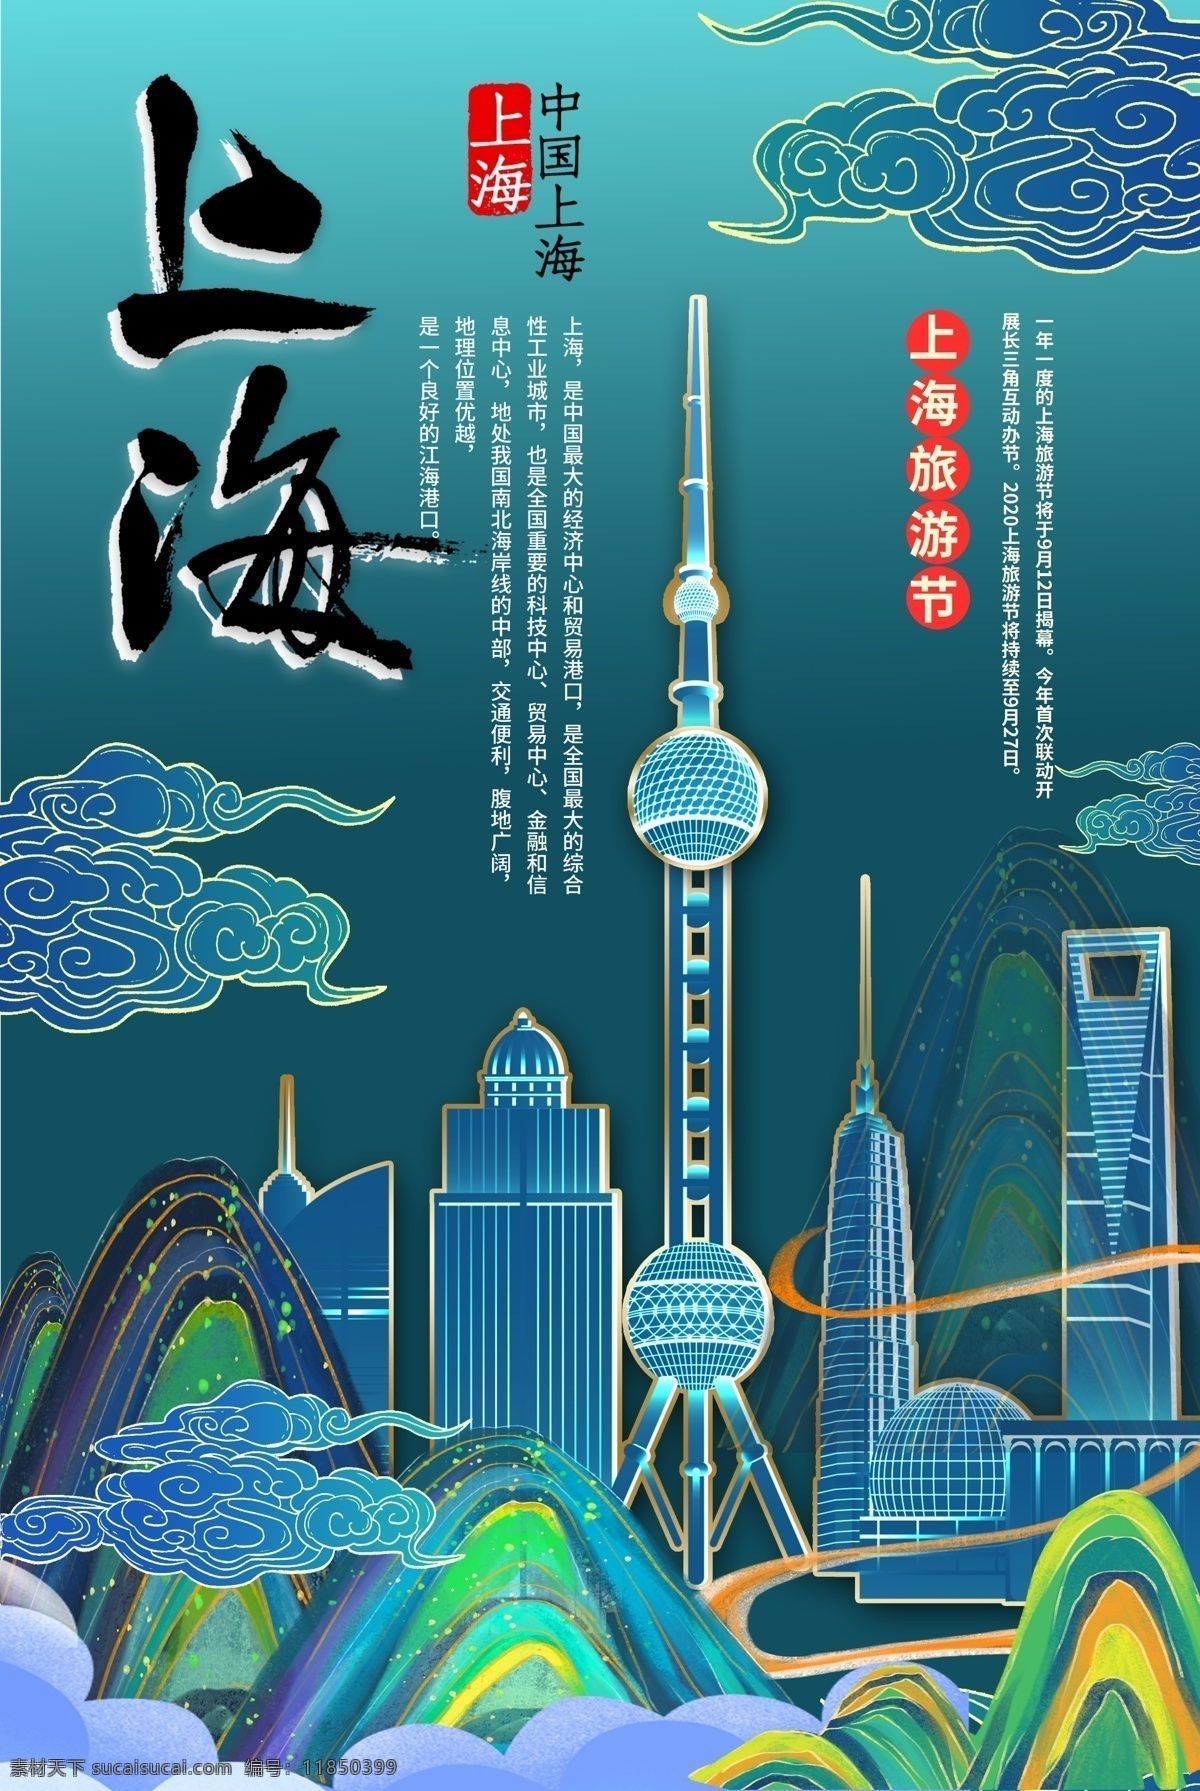 上海印象 上海 上海城隍庙 上海旅游 促销 出游 城隍庙 旅游 旅游海报 旅行社 海报 避暑游